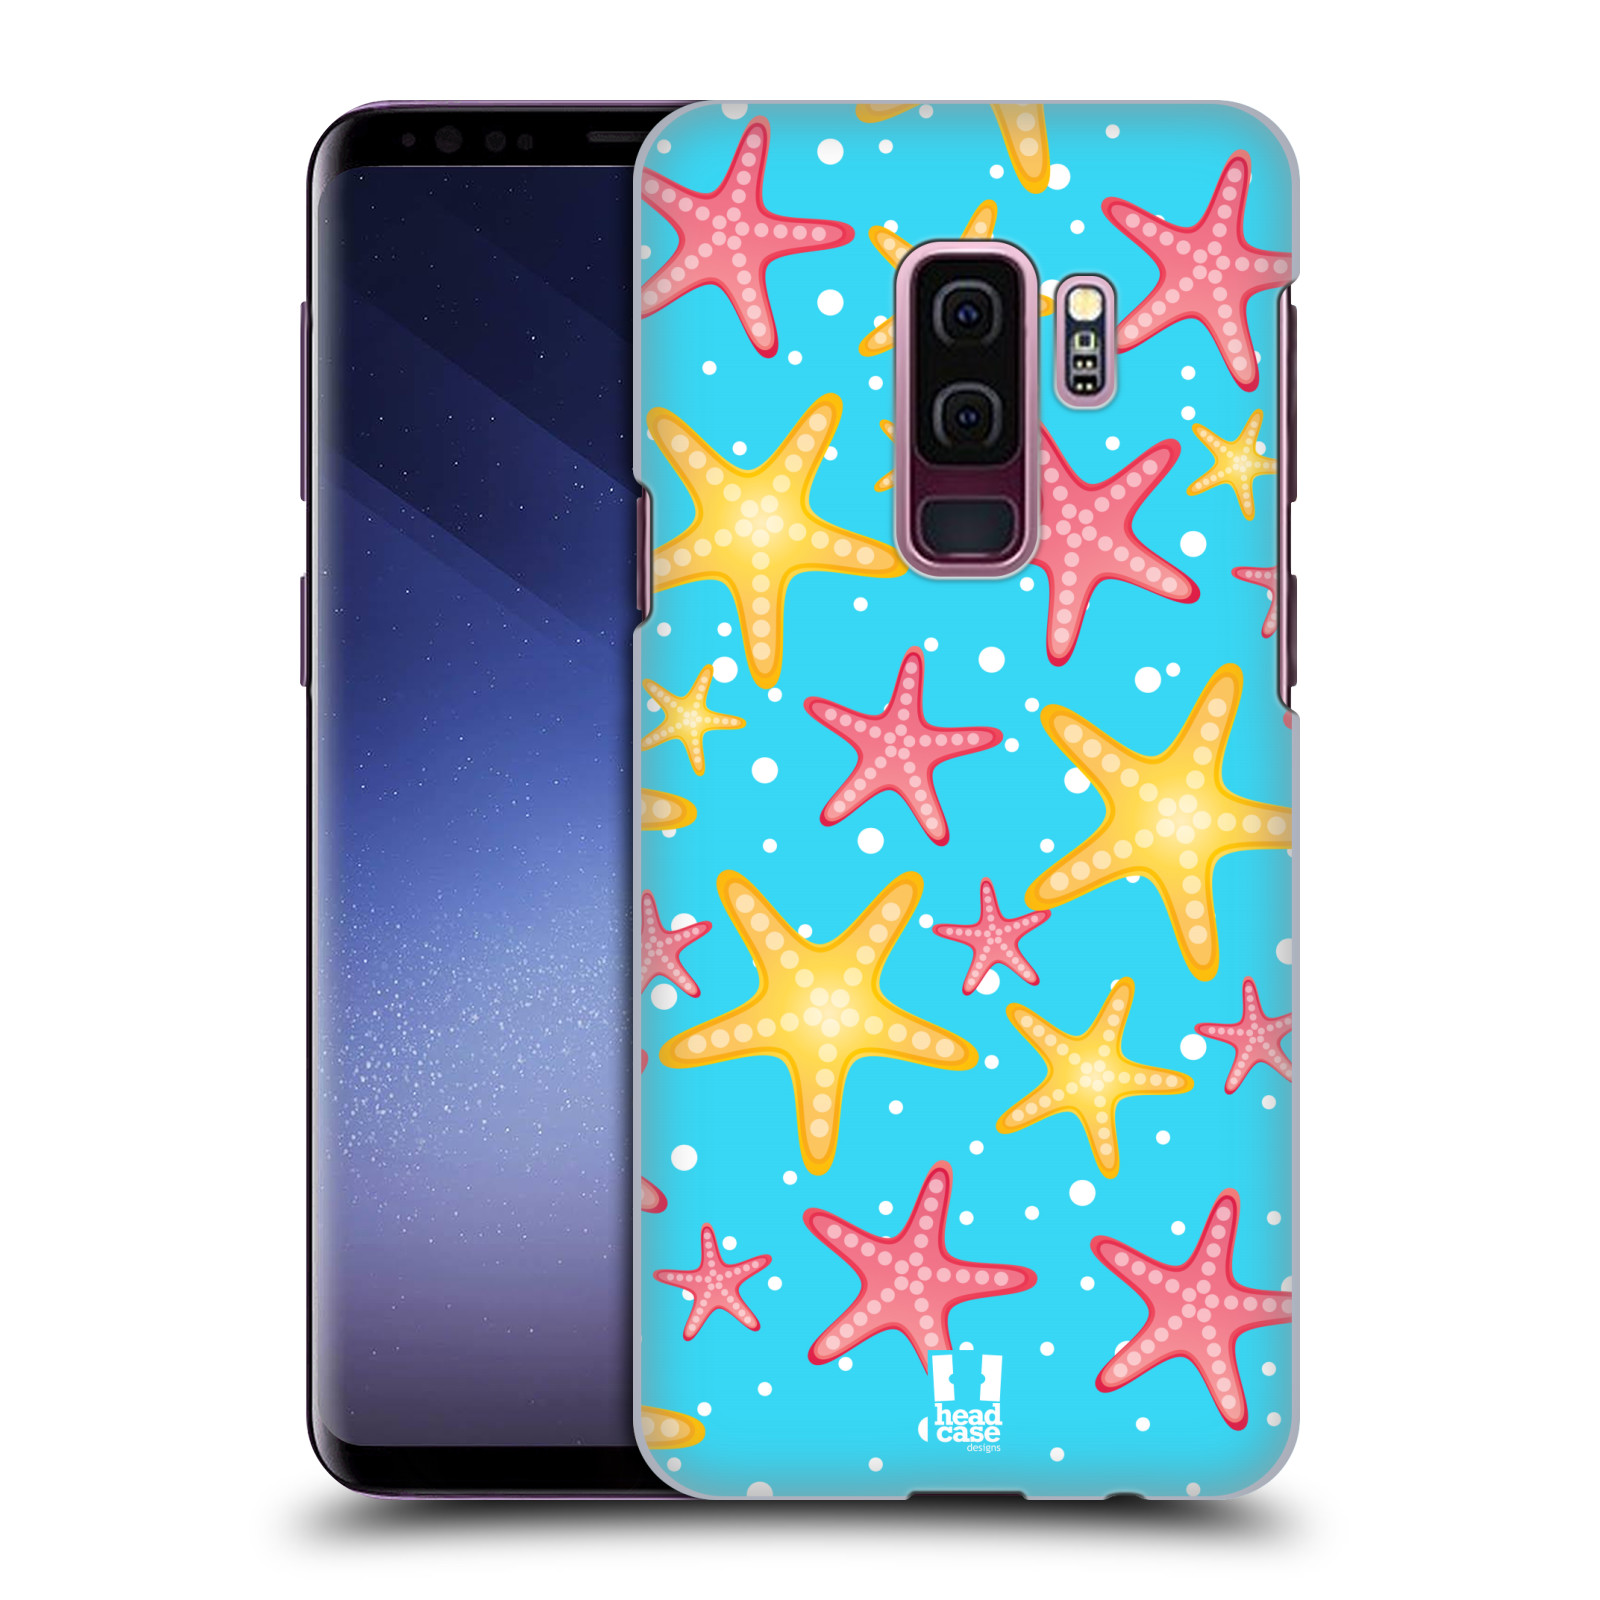 Zadní obal pro mobil Samsung Galaxy S9 PLUS - HEAD CASE - kreslený mořský vzor hvězda